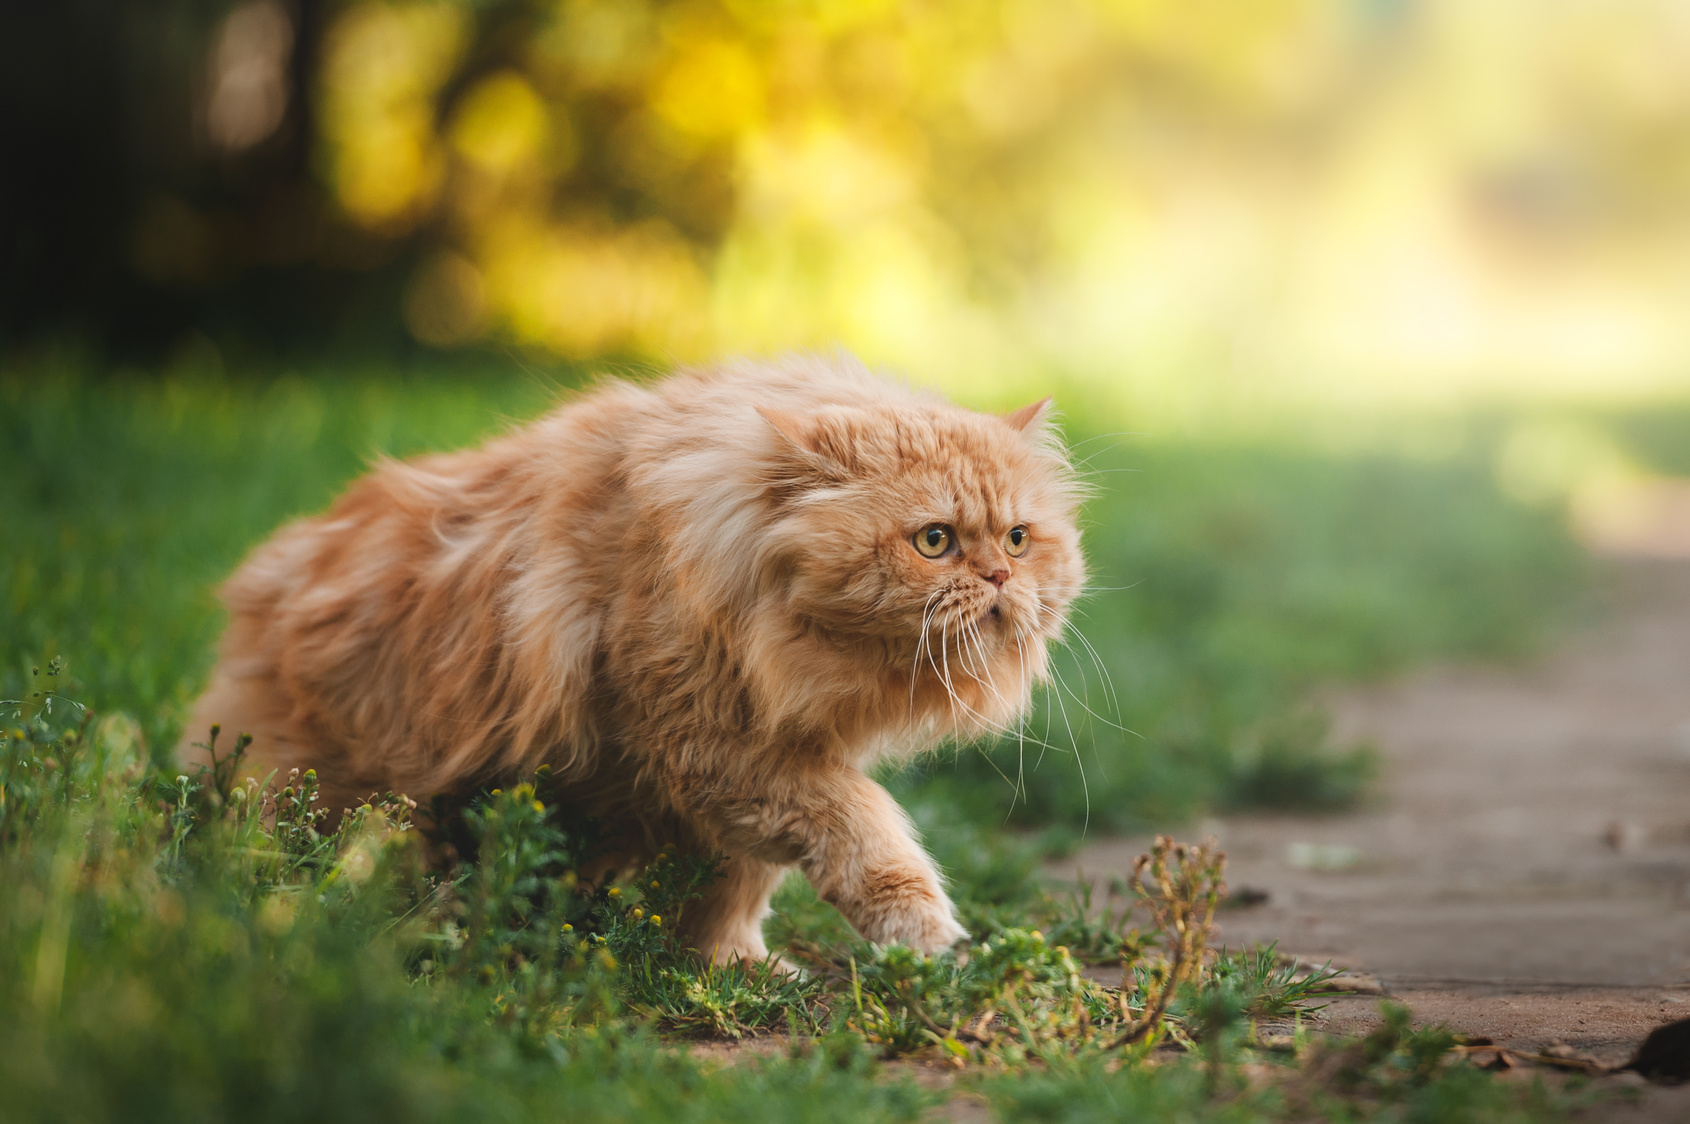 Ginger persian cat exploring